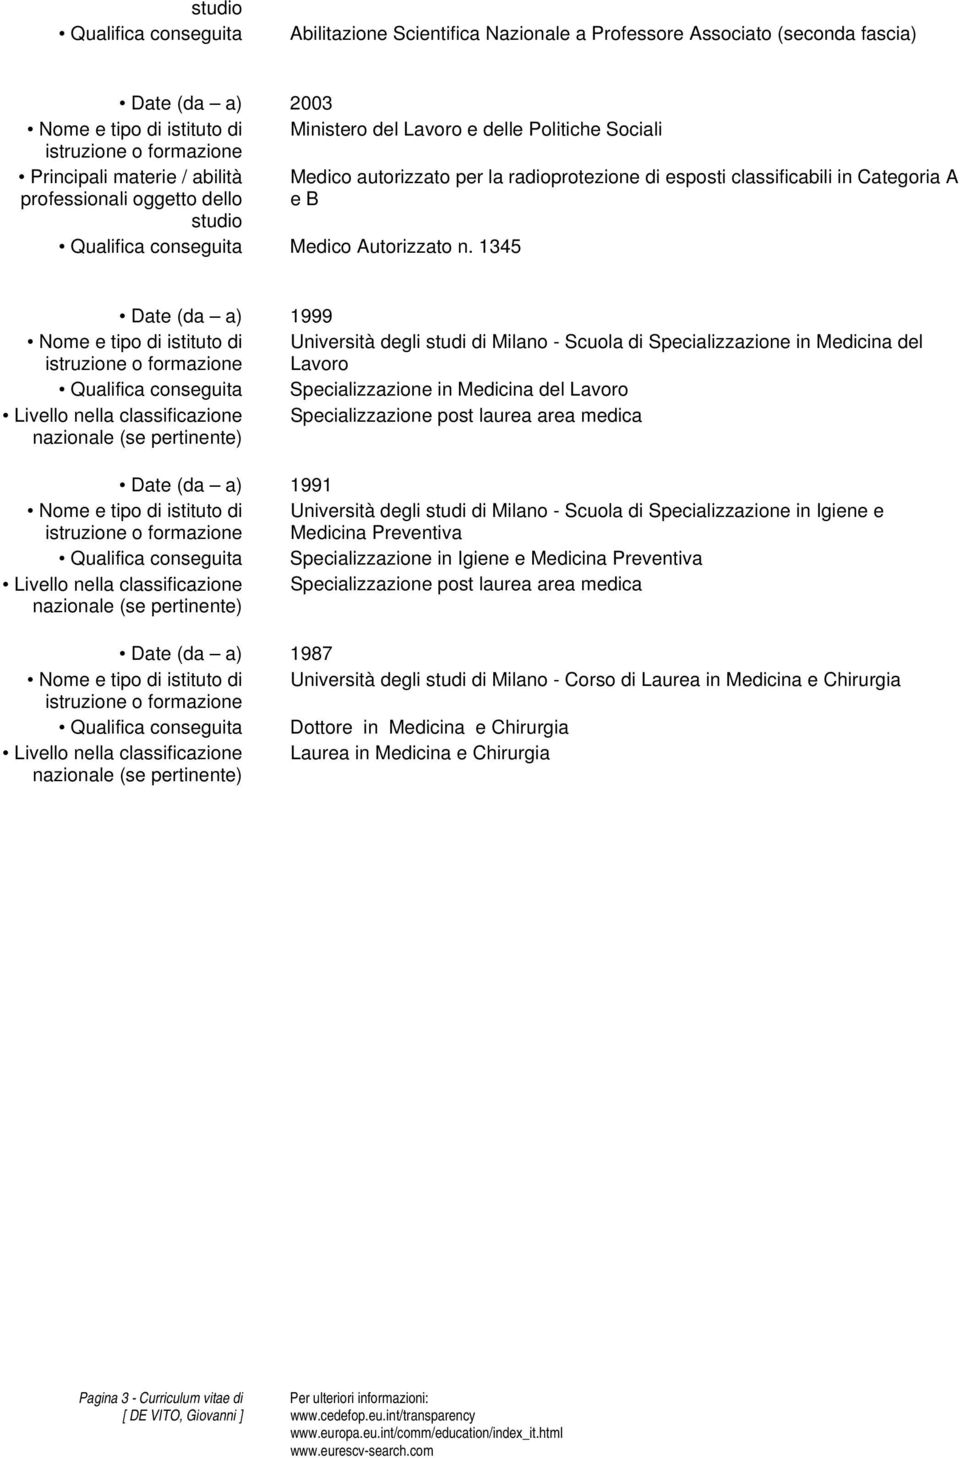 1345 Date (da a) 1999 Nome e tipo di istituto di Università degli studi di Milano - Scuola di Specializzazione in Medicina del Lavoro Qualifica conseguita Specializzazione in Medicina del Lavoro